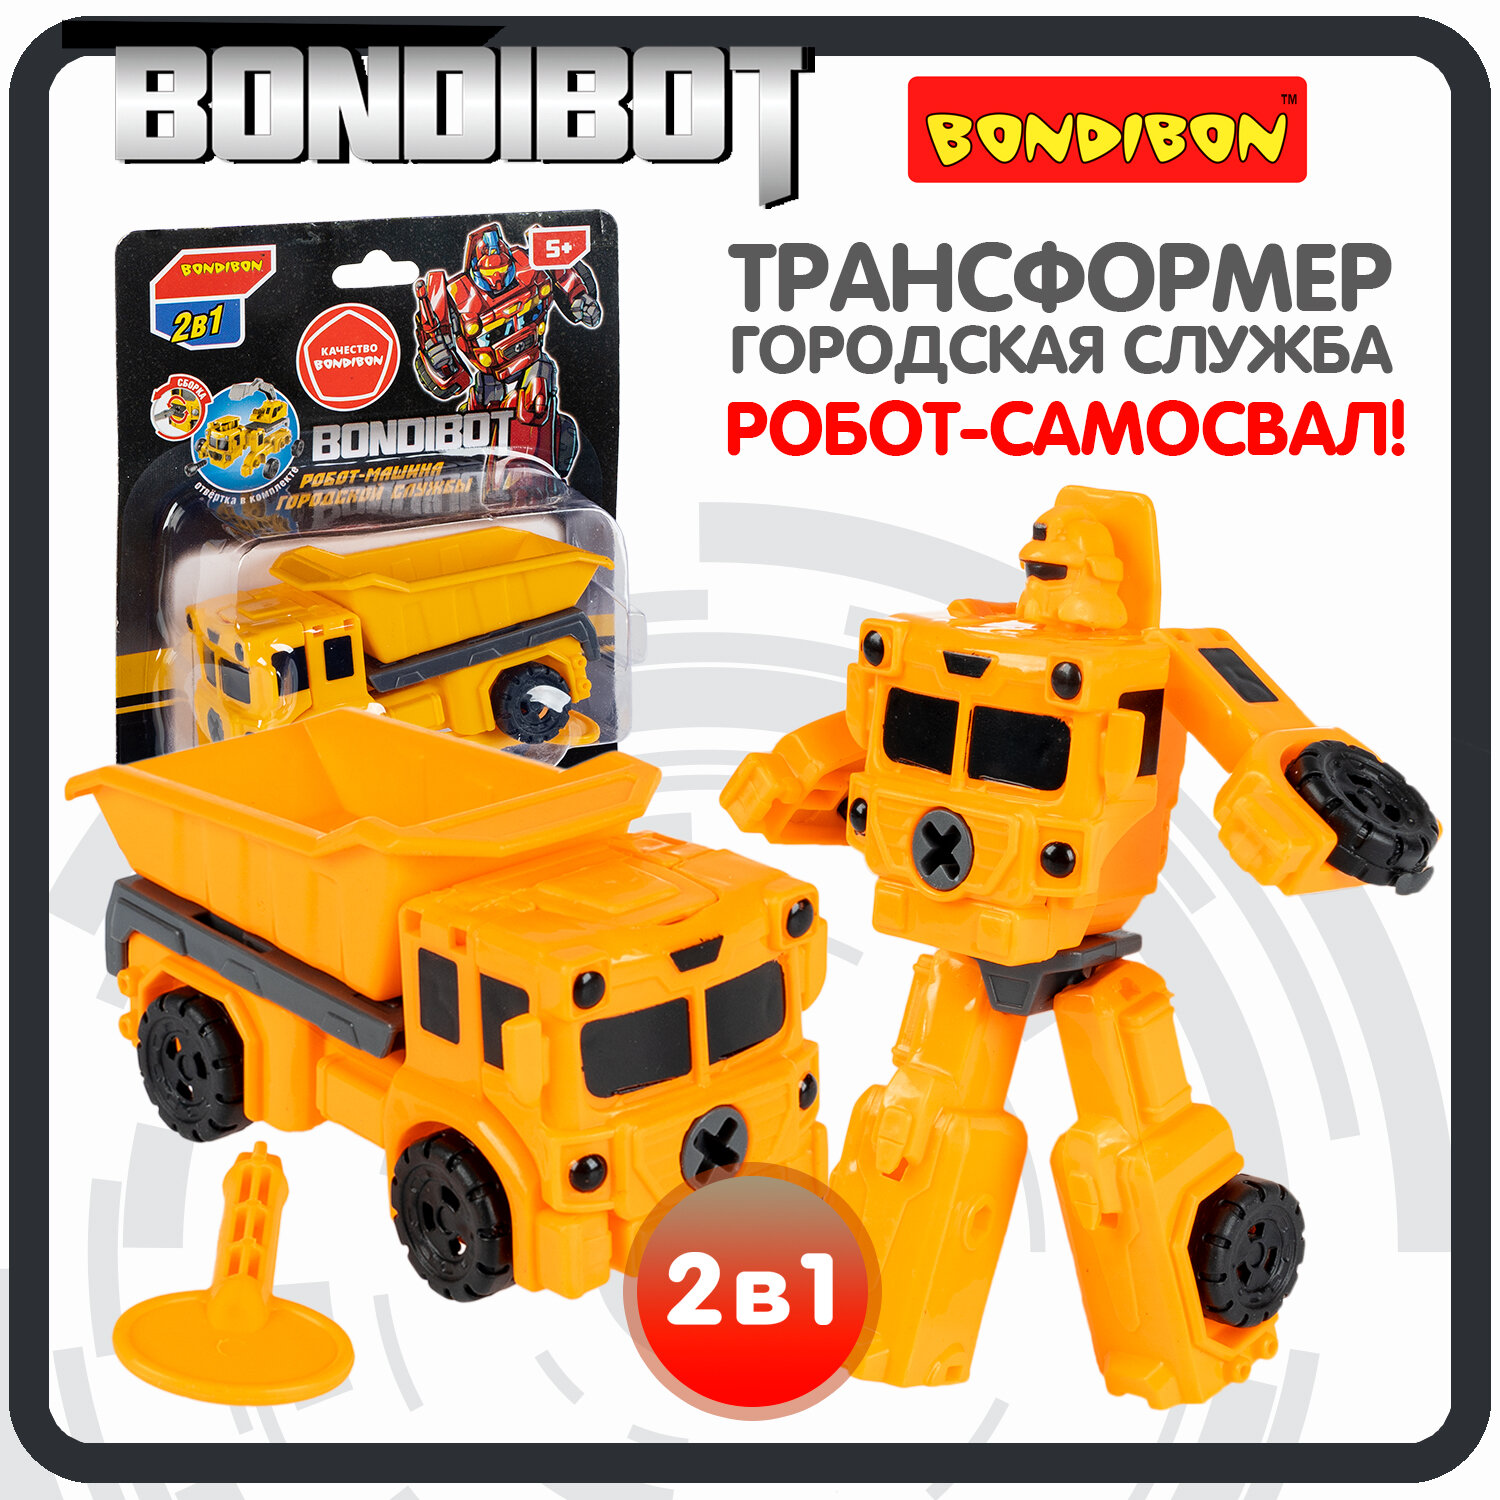 Трансформер робот-машина городской службы, 2в1 BONDIBOT Bondibon, самосвал, цвет жёлтый, CRD13,5х11,